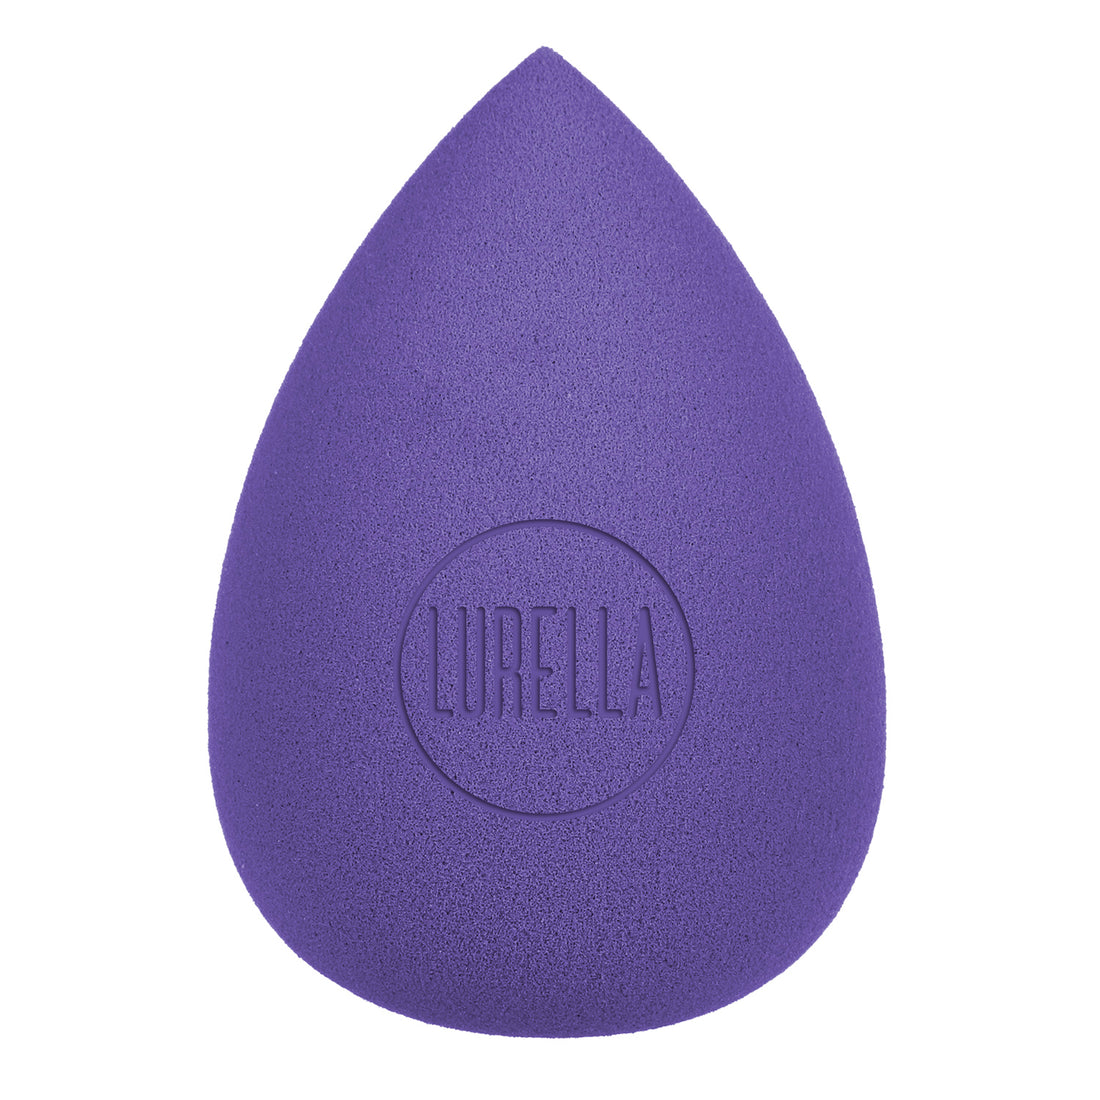 Lurella Teardrop Beauty Sponge - Black